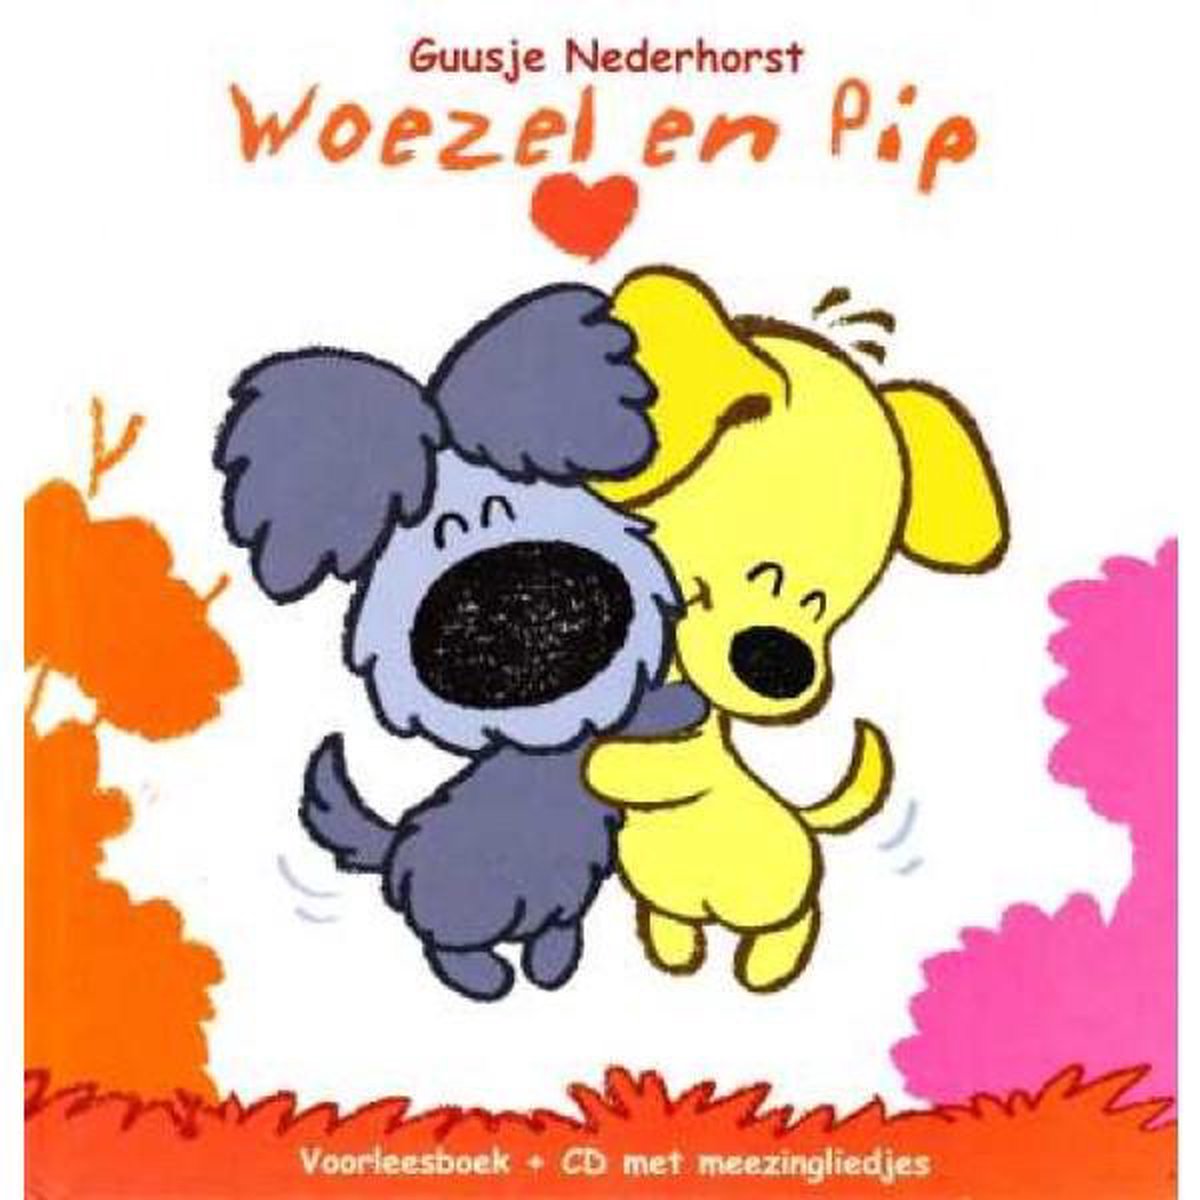 Woezel & Pip deel 1 - Voorleesboek + CD met meezingliedjes, Guusje  Nederhorst |... | bol.com